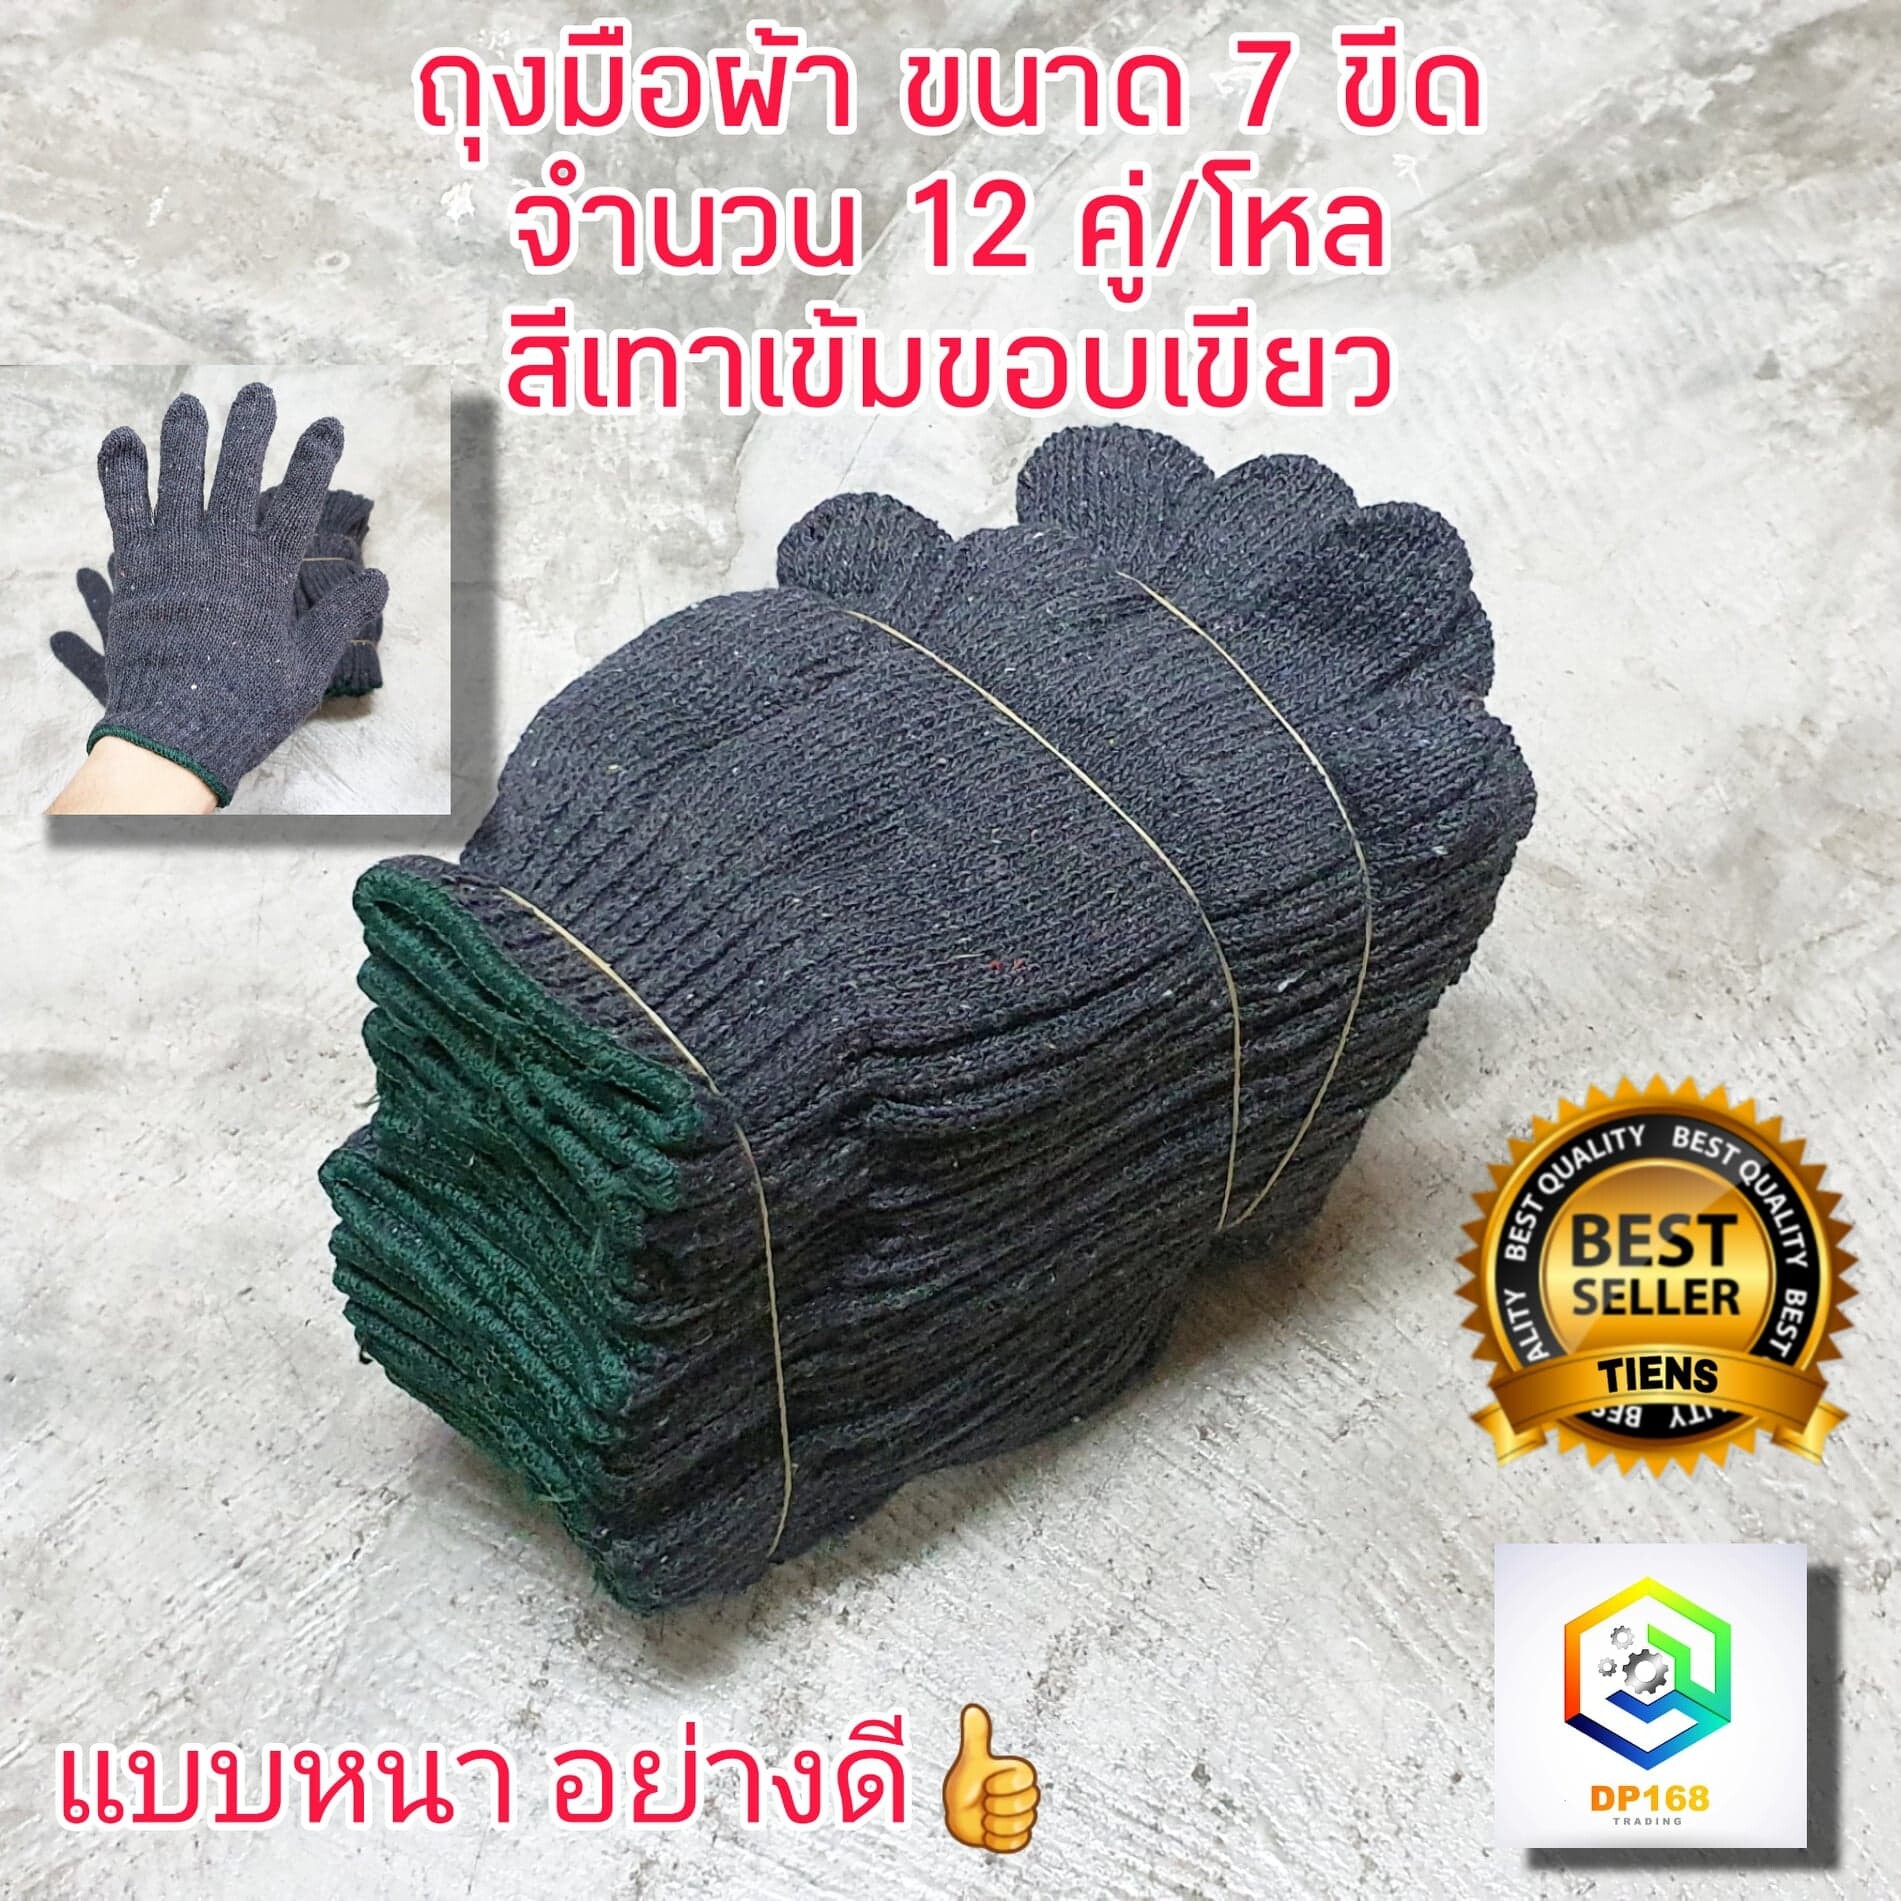 ถุงมือผ้า ถุงมือ ขนาด 7ขีด หรือ 700 กรัม สีเทาขอบเขียว และ สีขาวขอบส้ม 12คู่/โหล น้ำหนักเต็ม ถุงมือแบบหนา ถุงมืออย่างดี